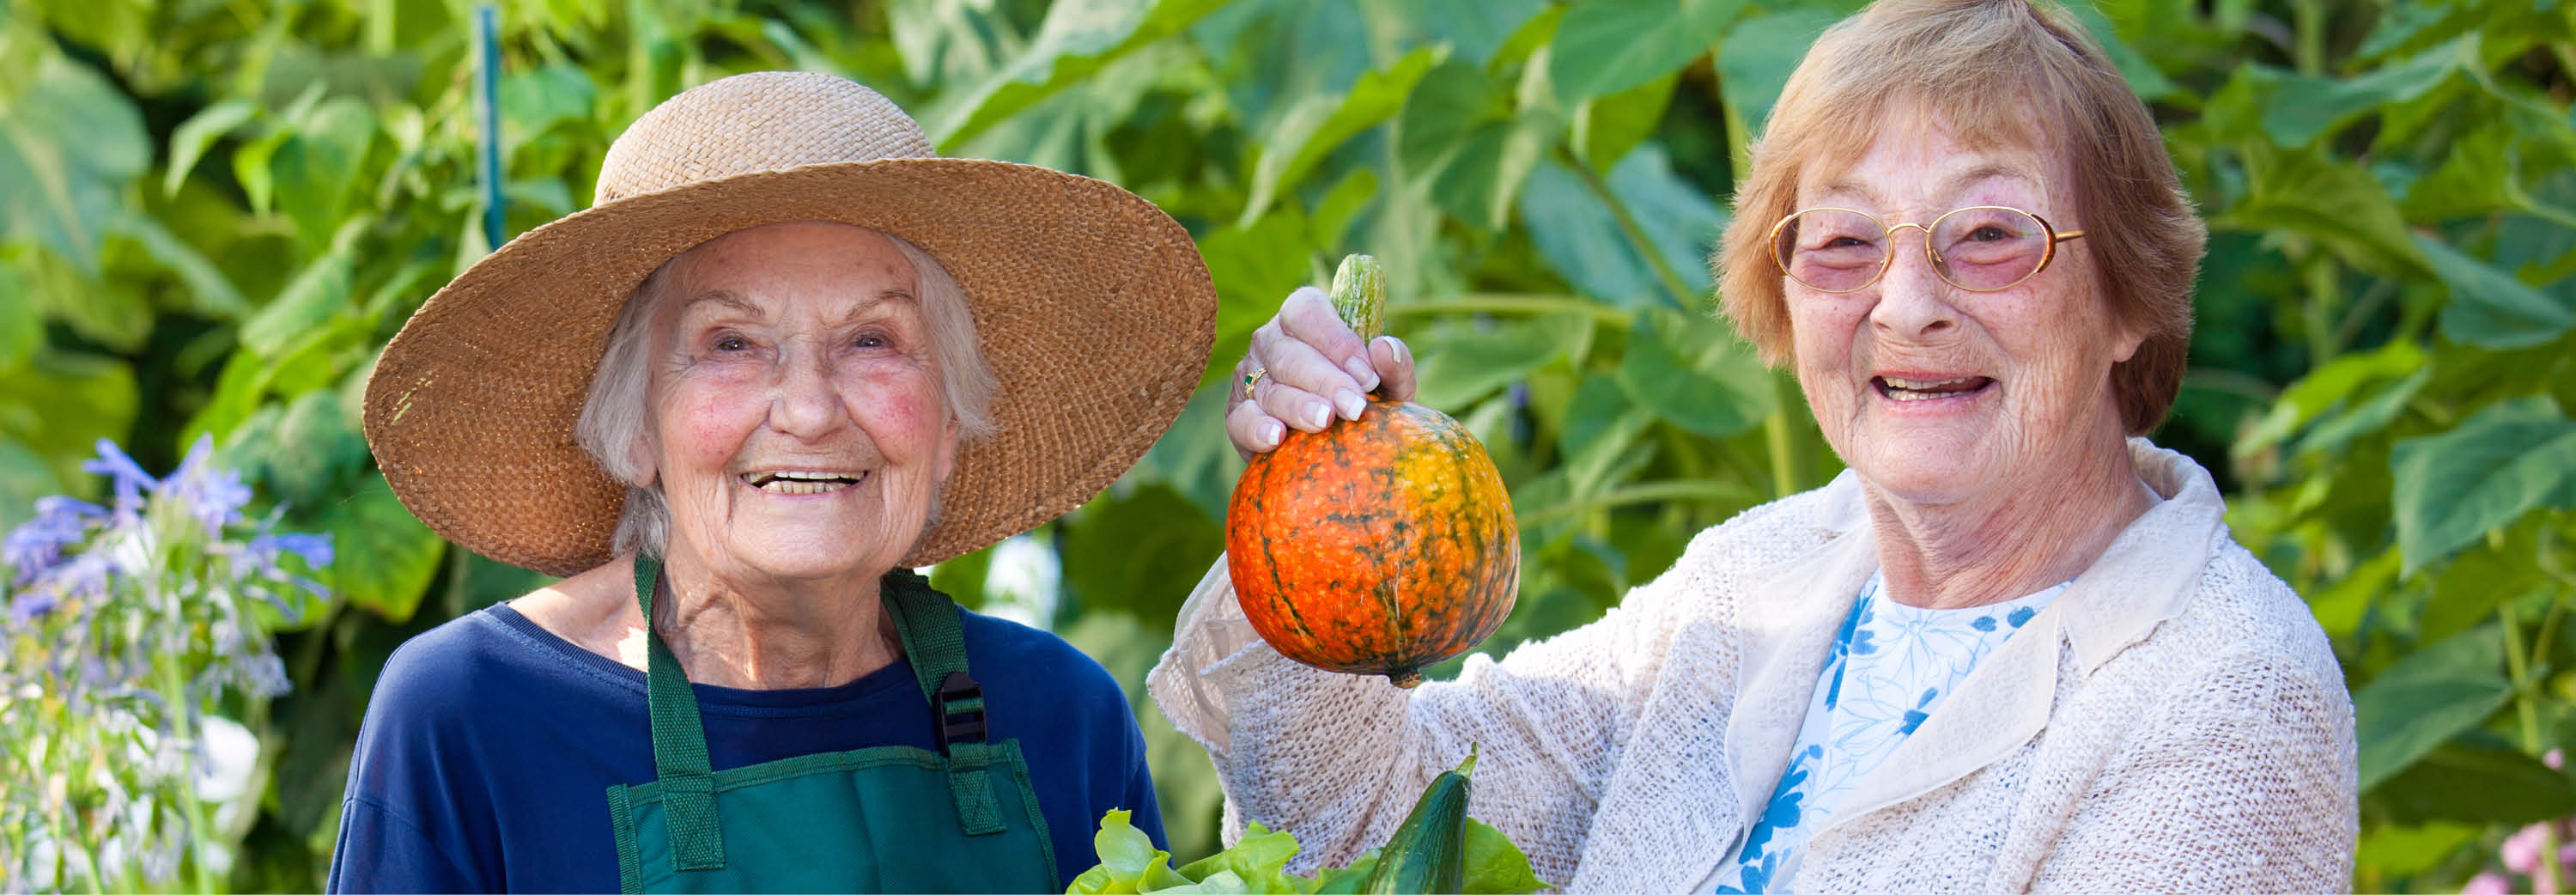 2 older women hold up a tiny pumpkin in a garden